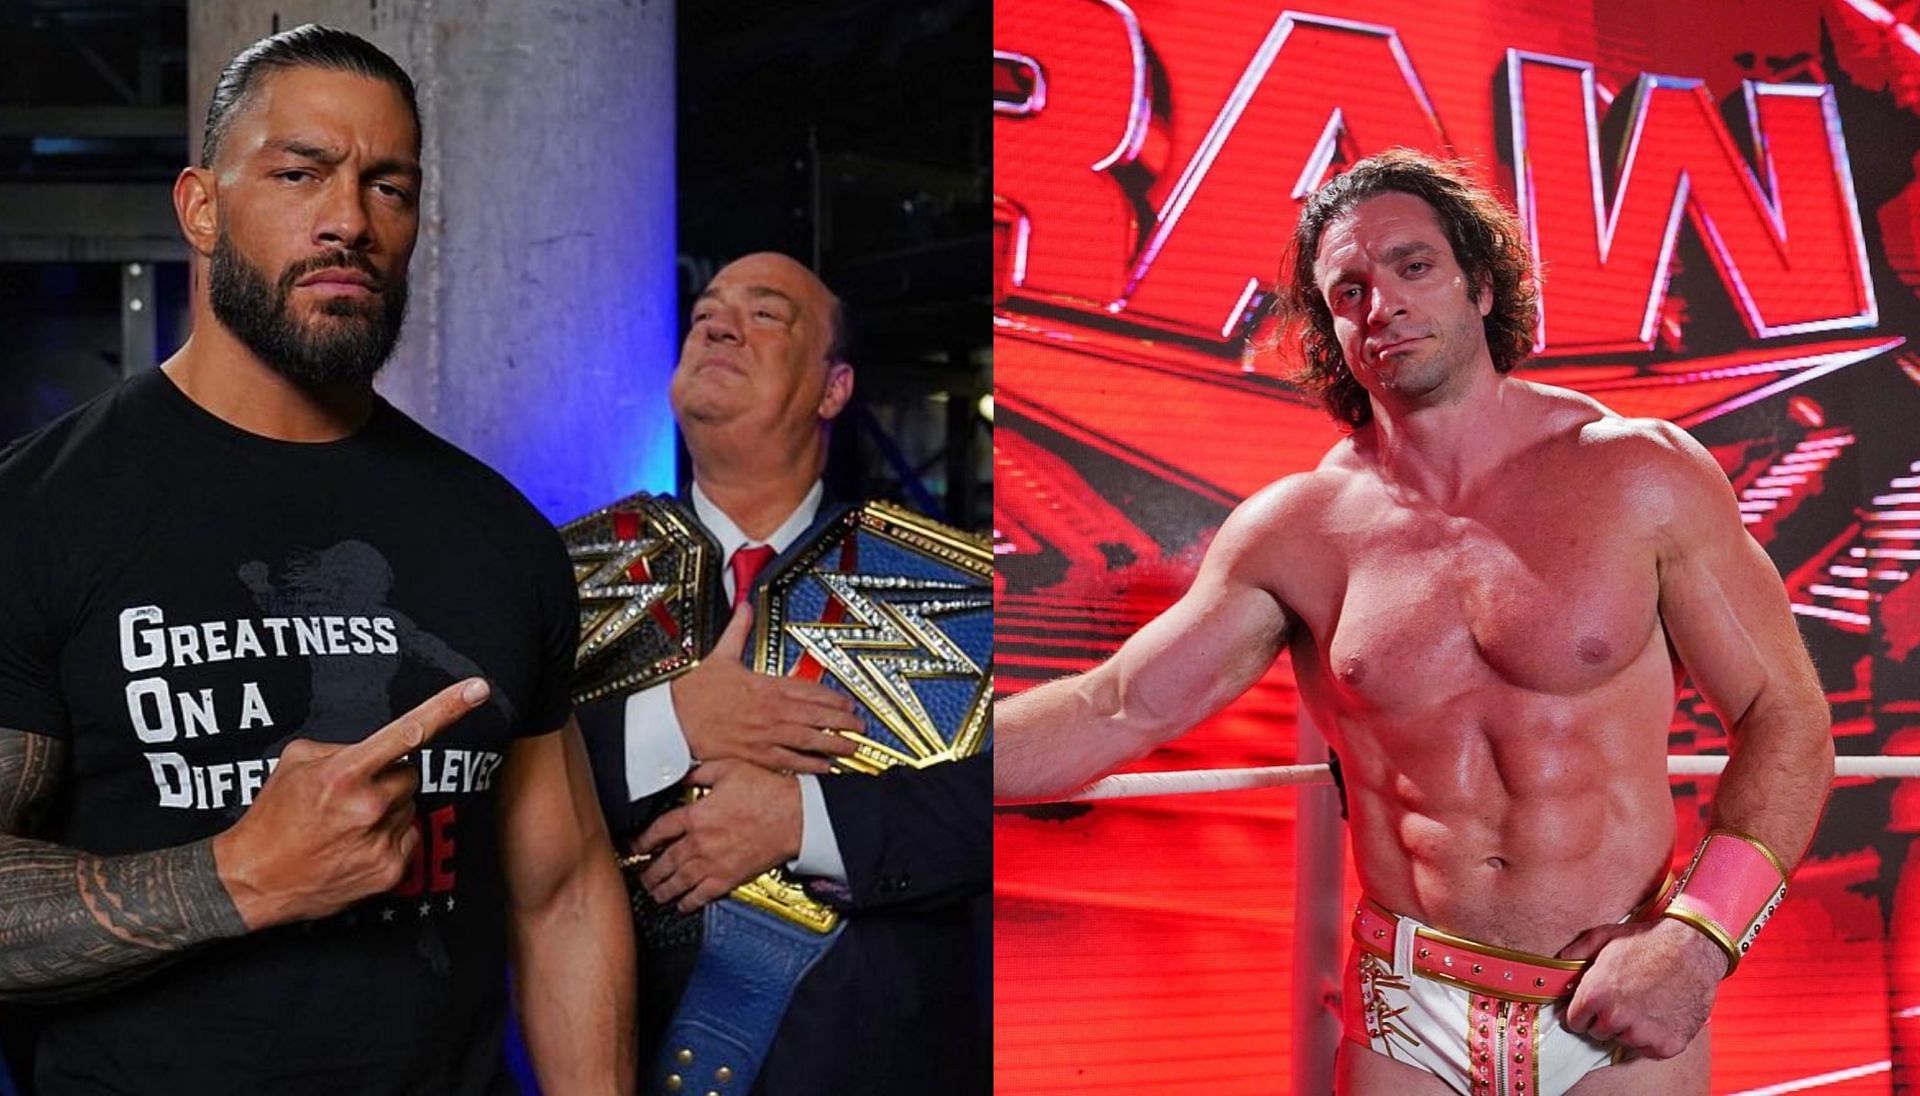 WWE Raw को लेकर फैंस की प्रतिक्रियाएं काफी अलग रही